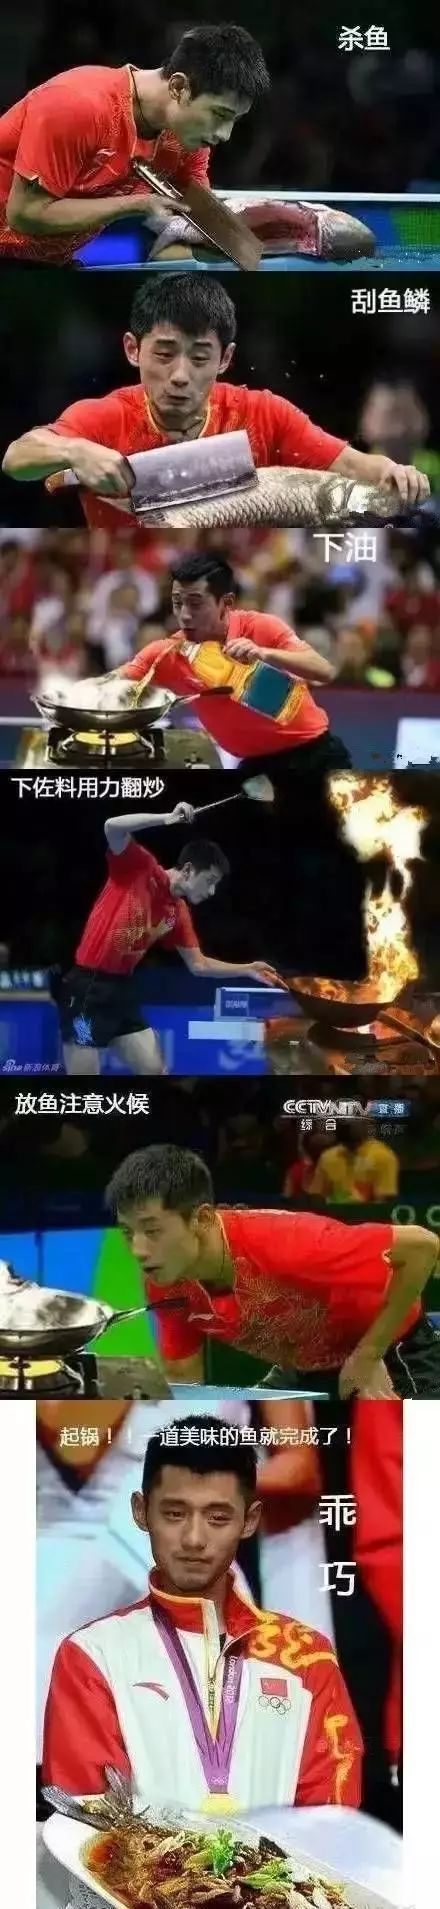 为啥中国乒乓球这么厉害? 看完这些你就明白了